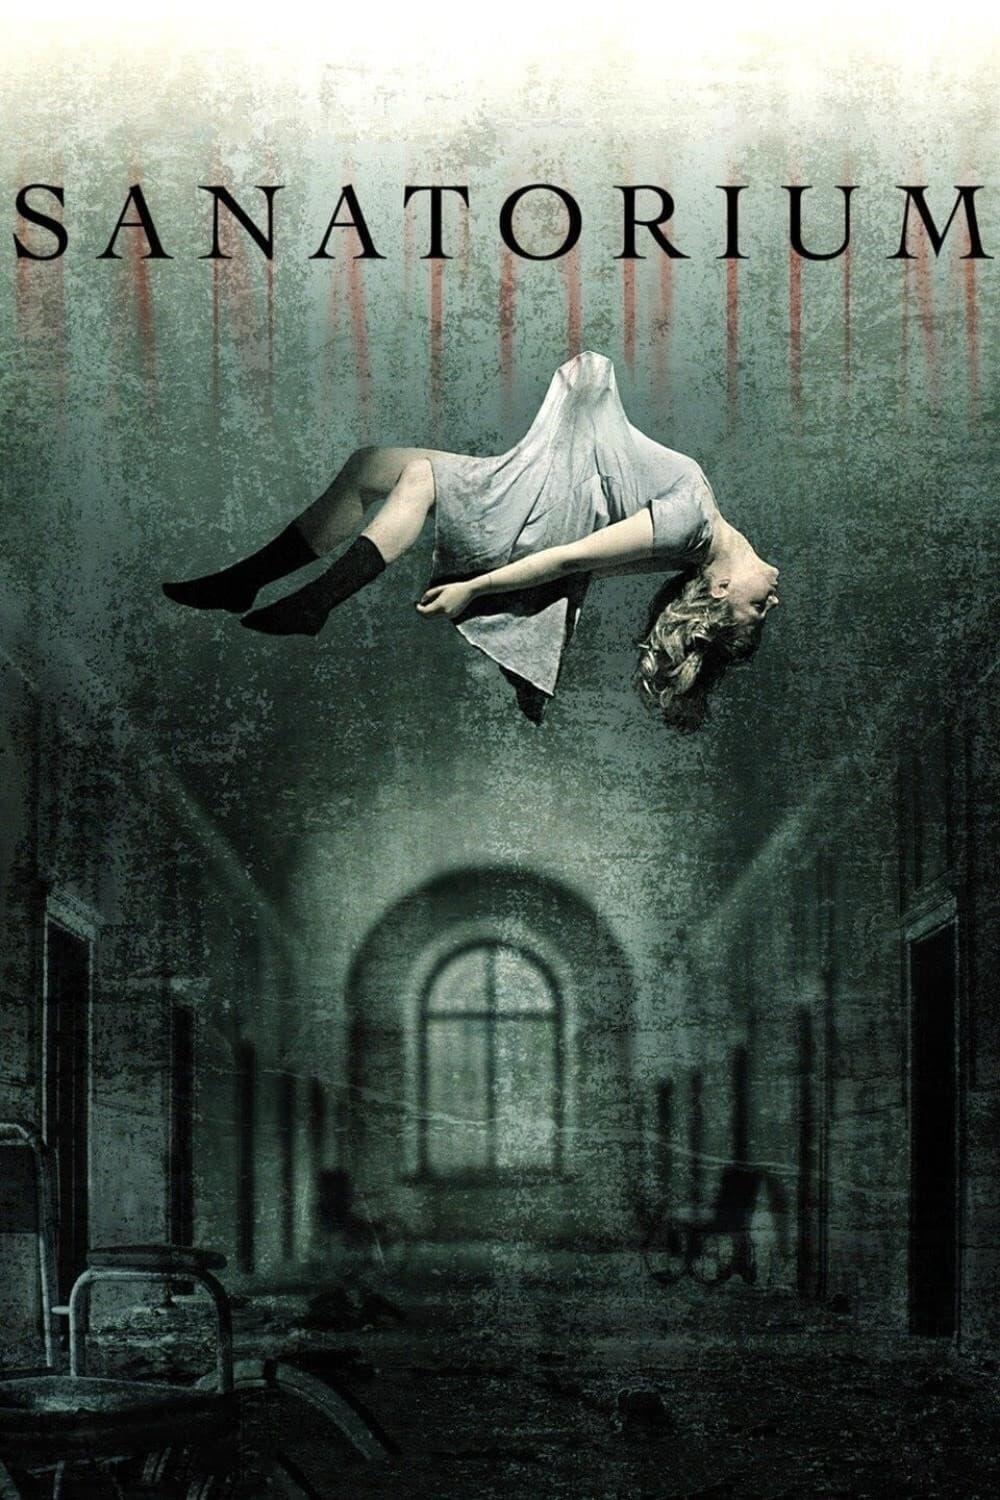 Sanatorium poster